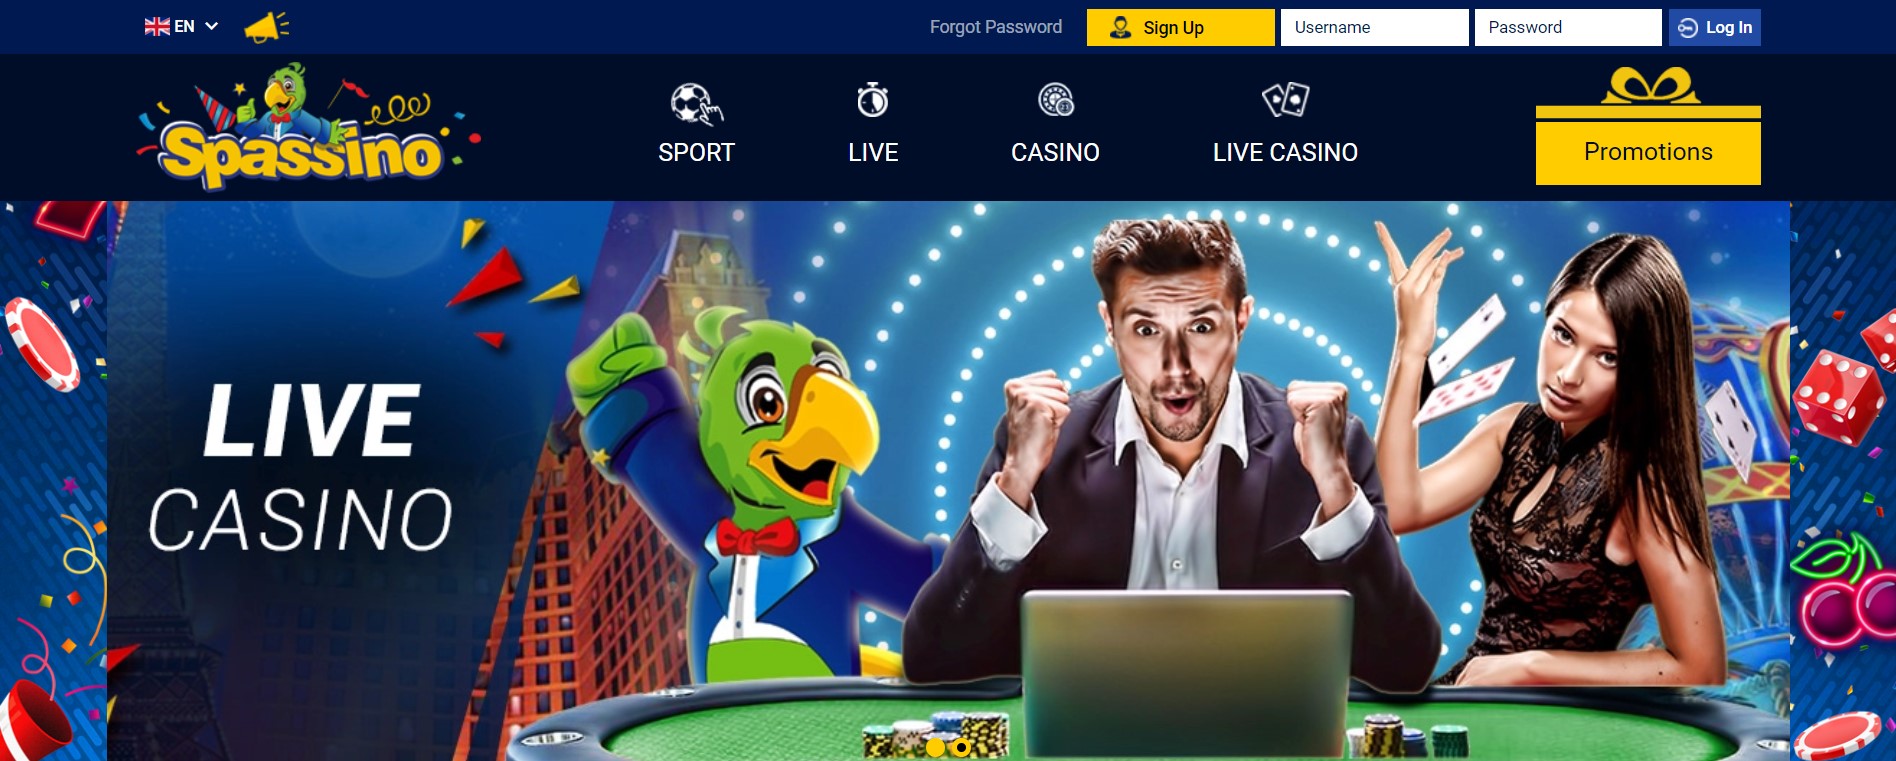 Spassino онлайн казино и ставки на спорт